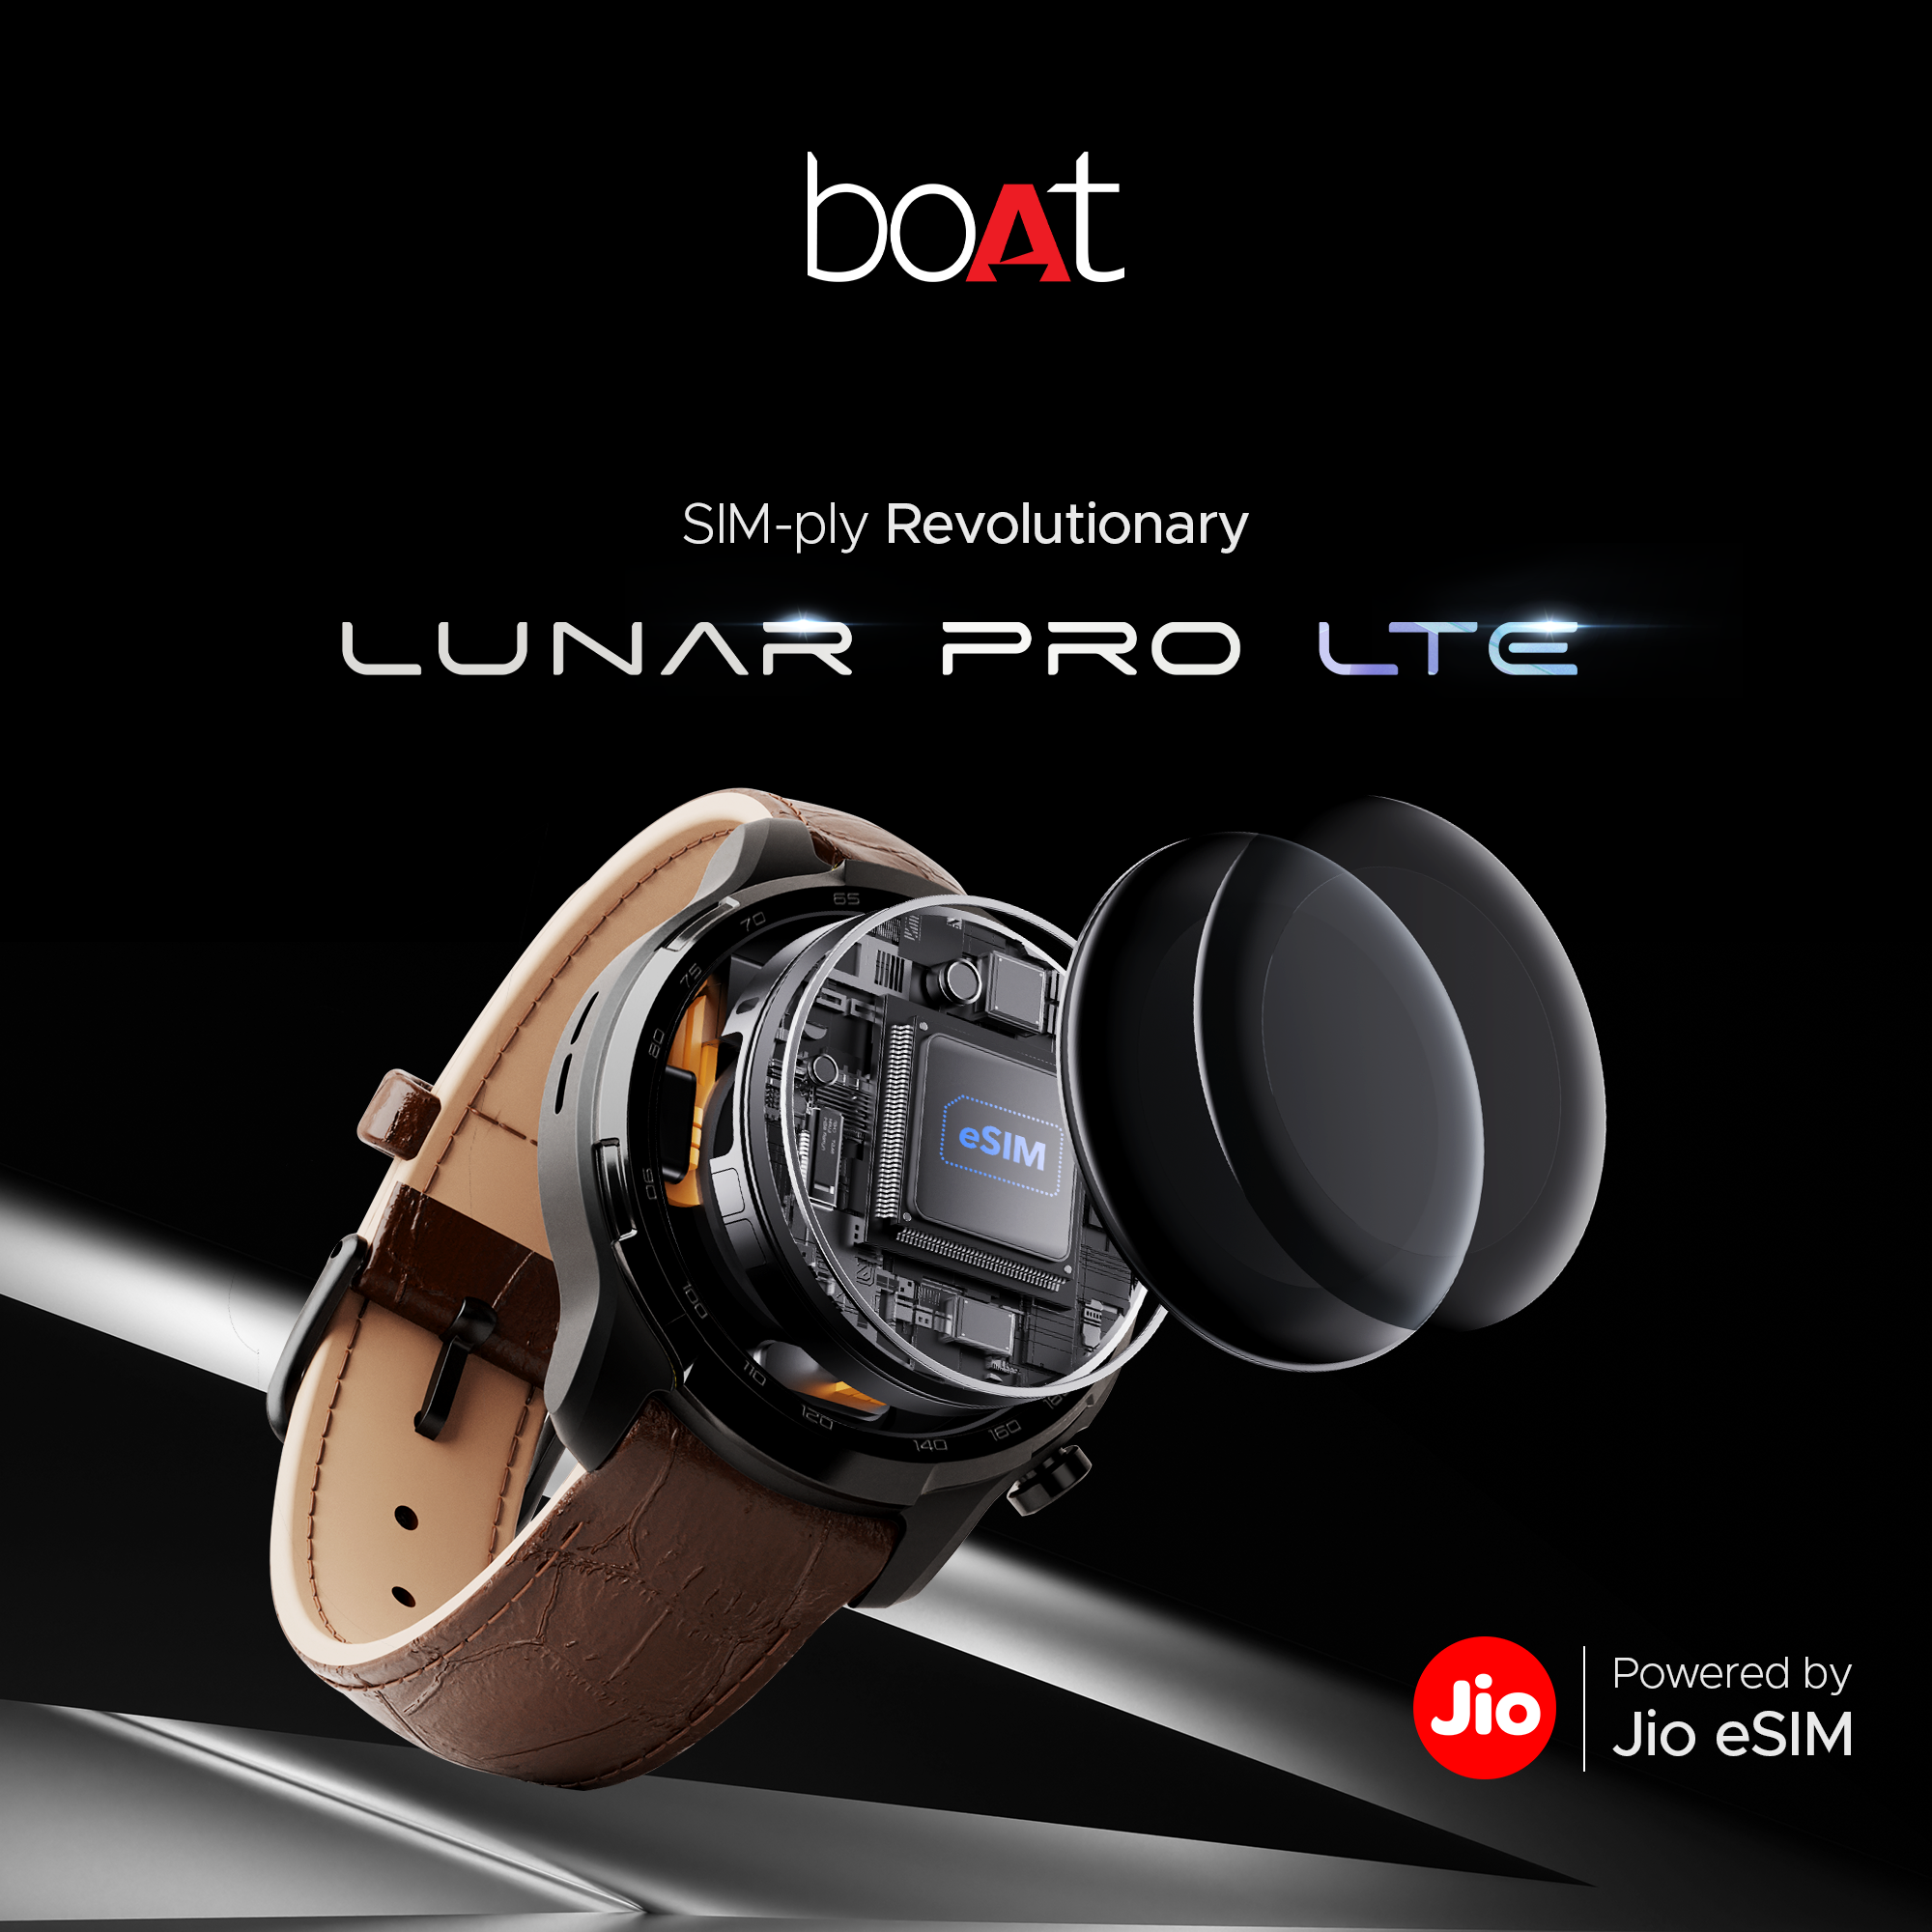  boAt Lunar Pro LTE: Features